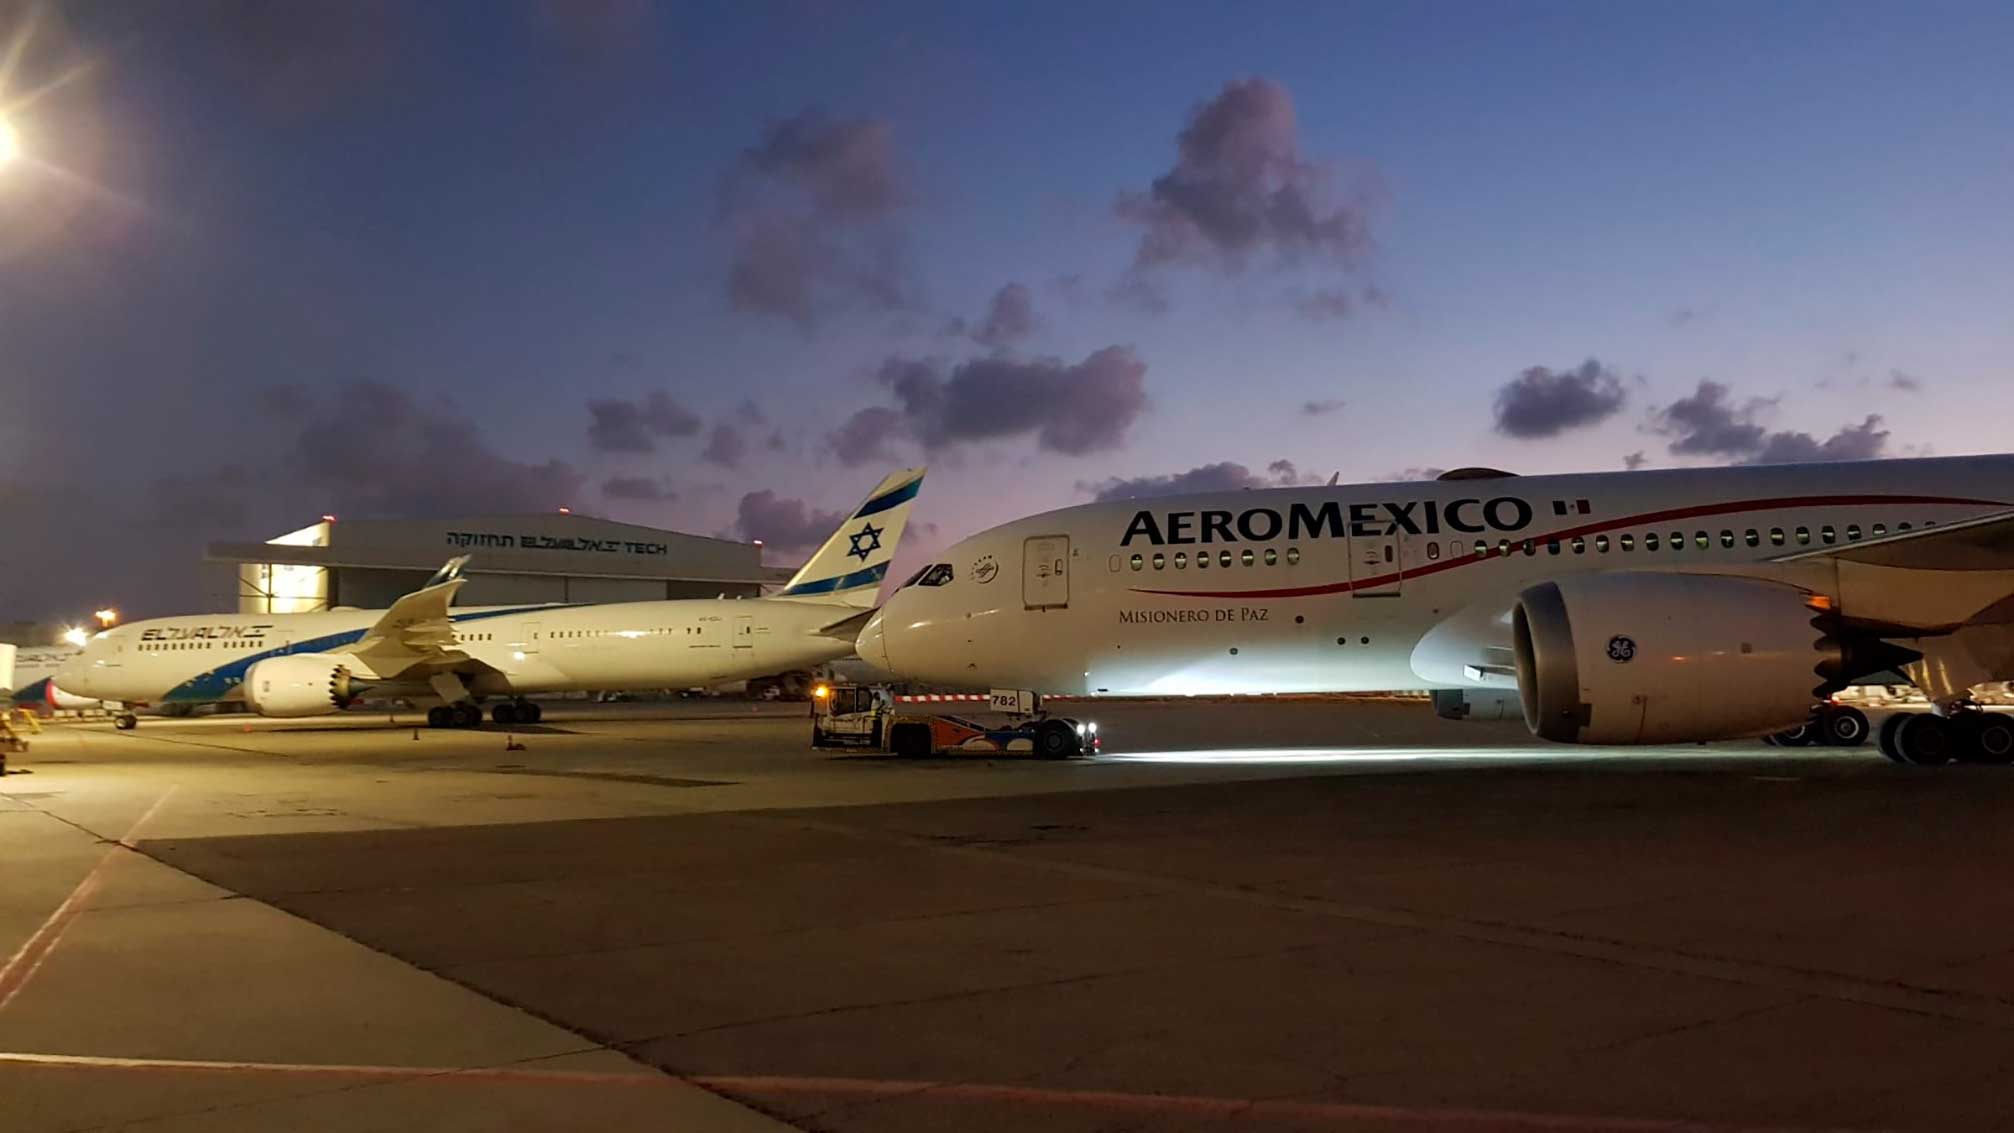 Avion-de-carga-Aeromexico